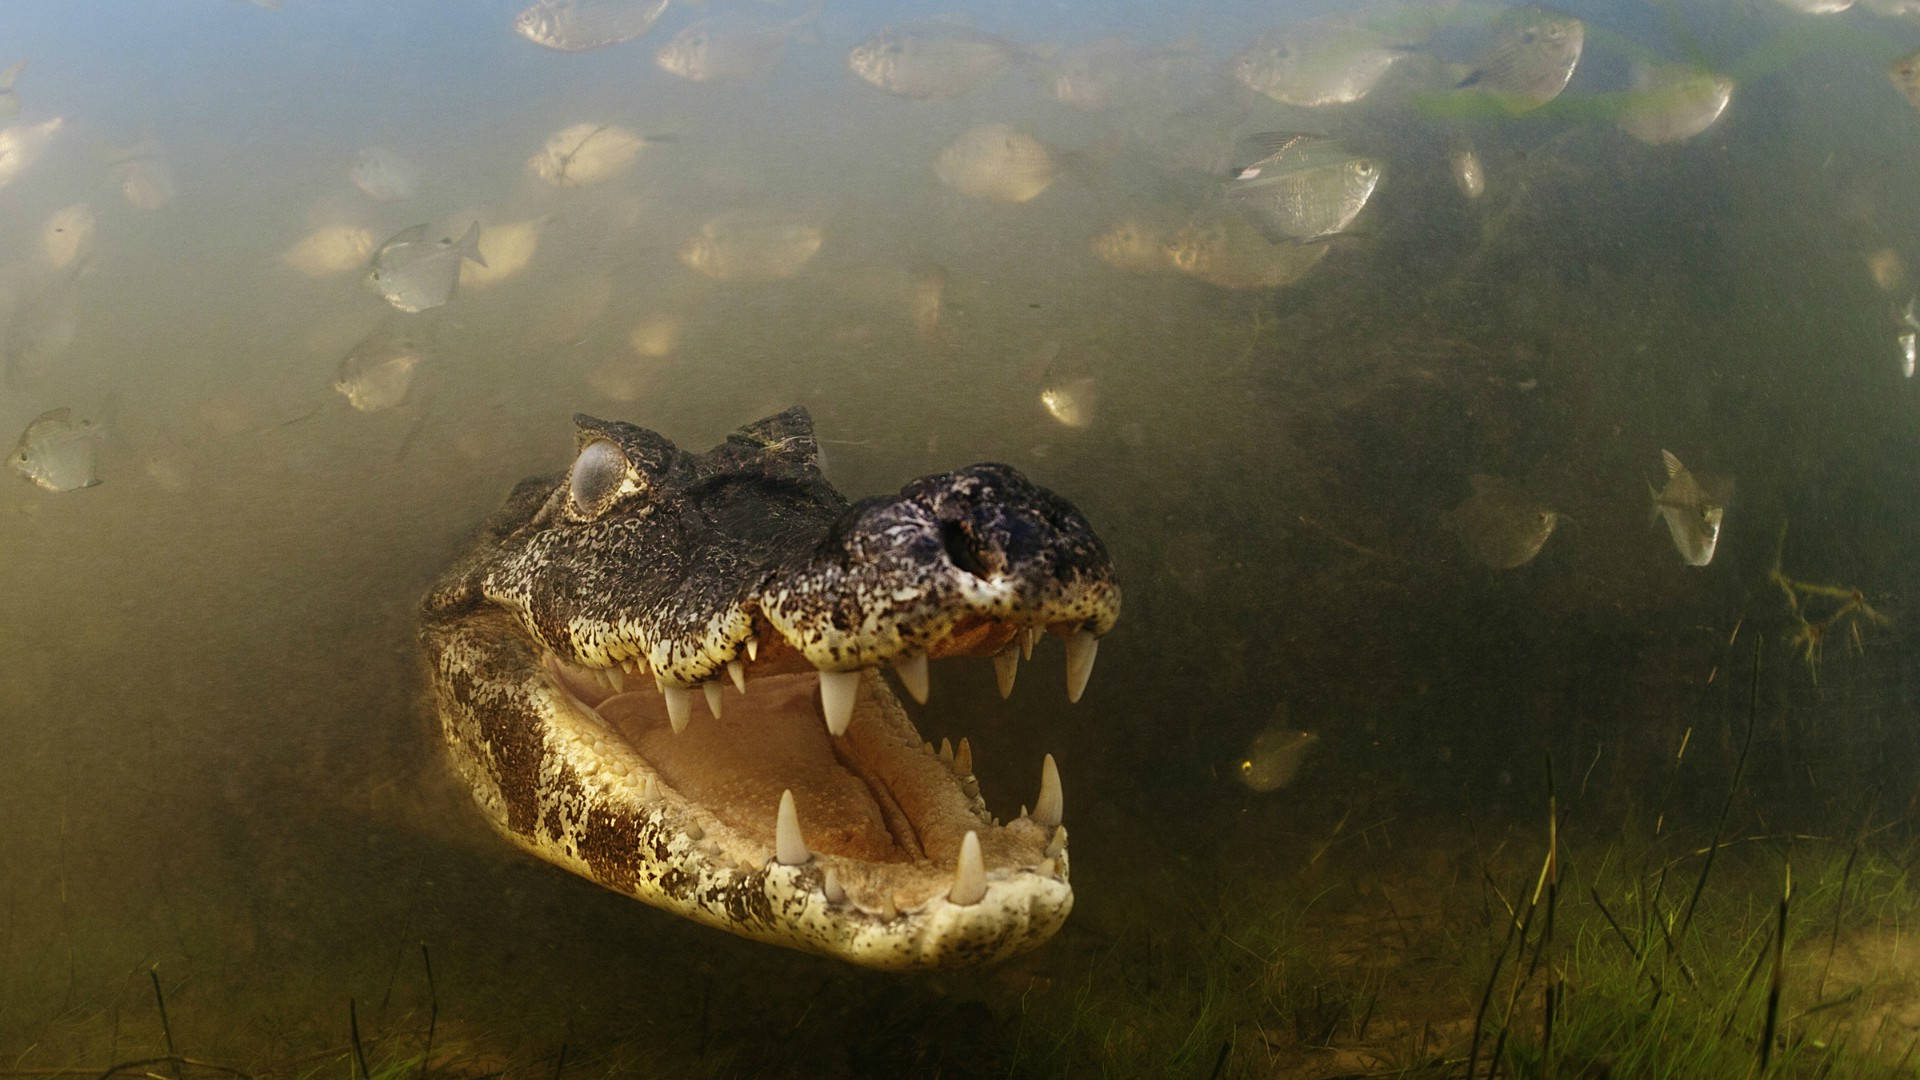 Underwater Black Swamp Alligator Background